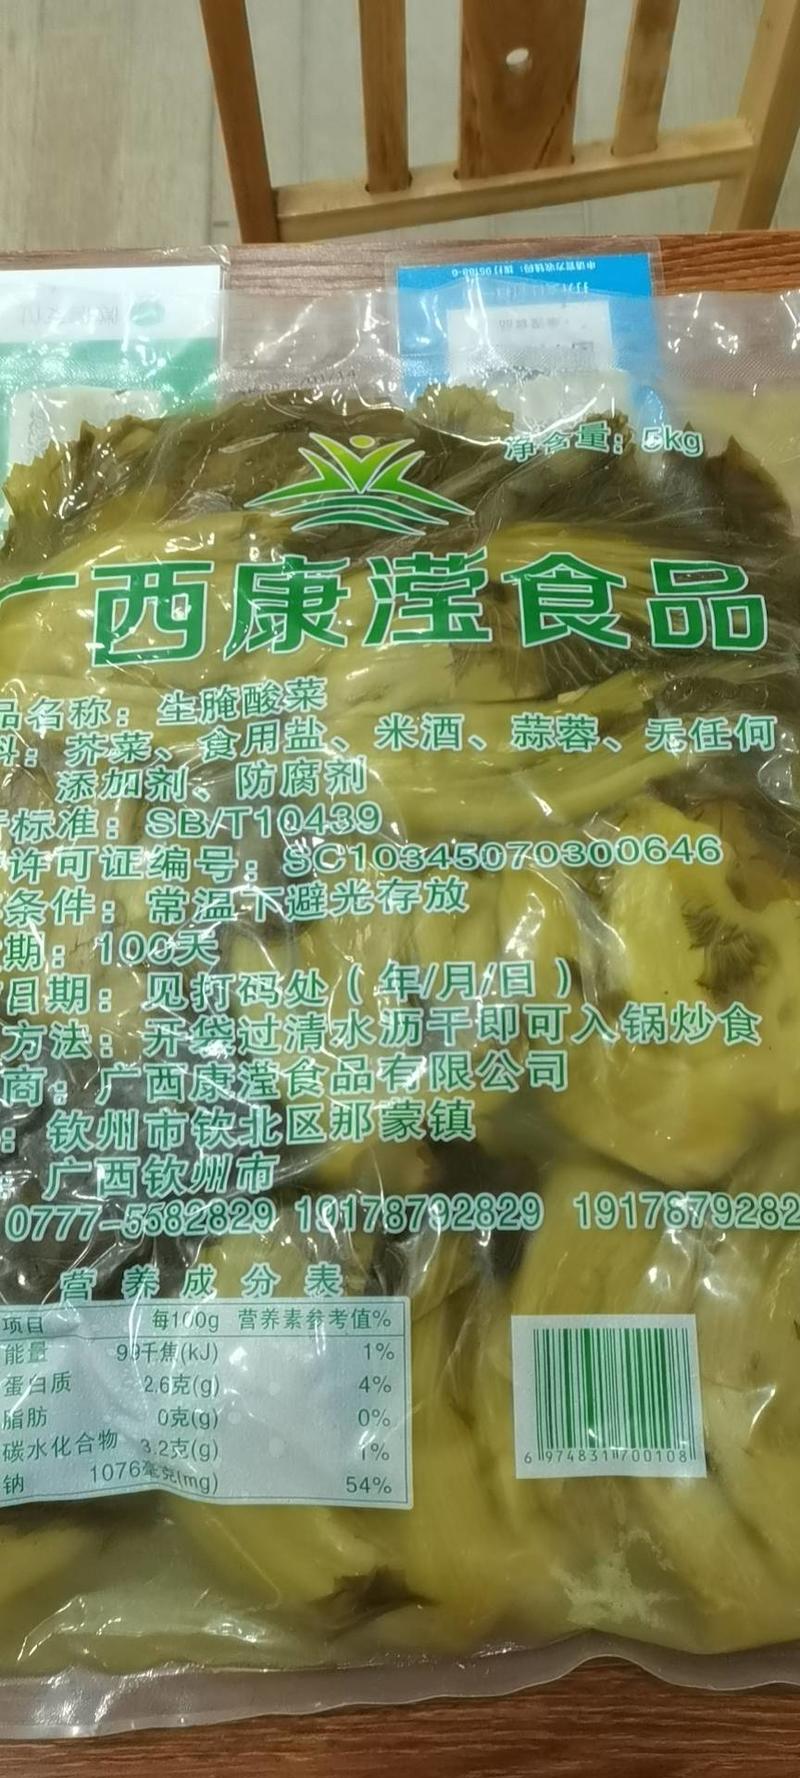 腌制玉芥酸菜泡菜常年出售每件35袋左右质量保障